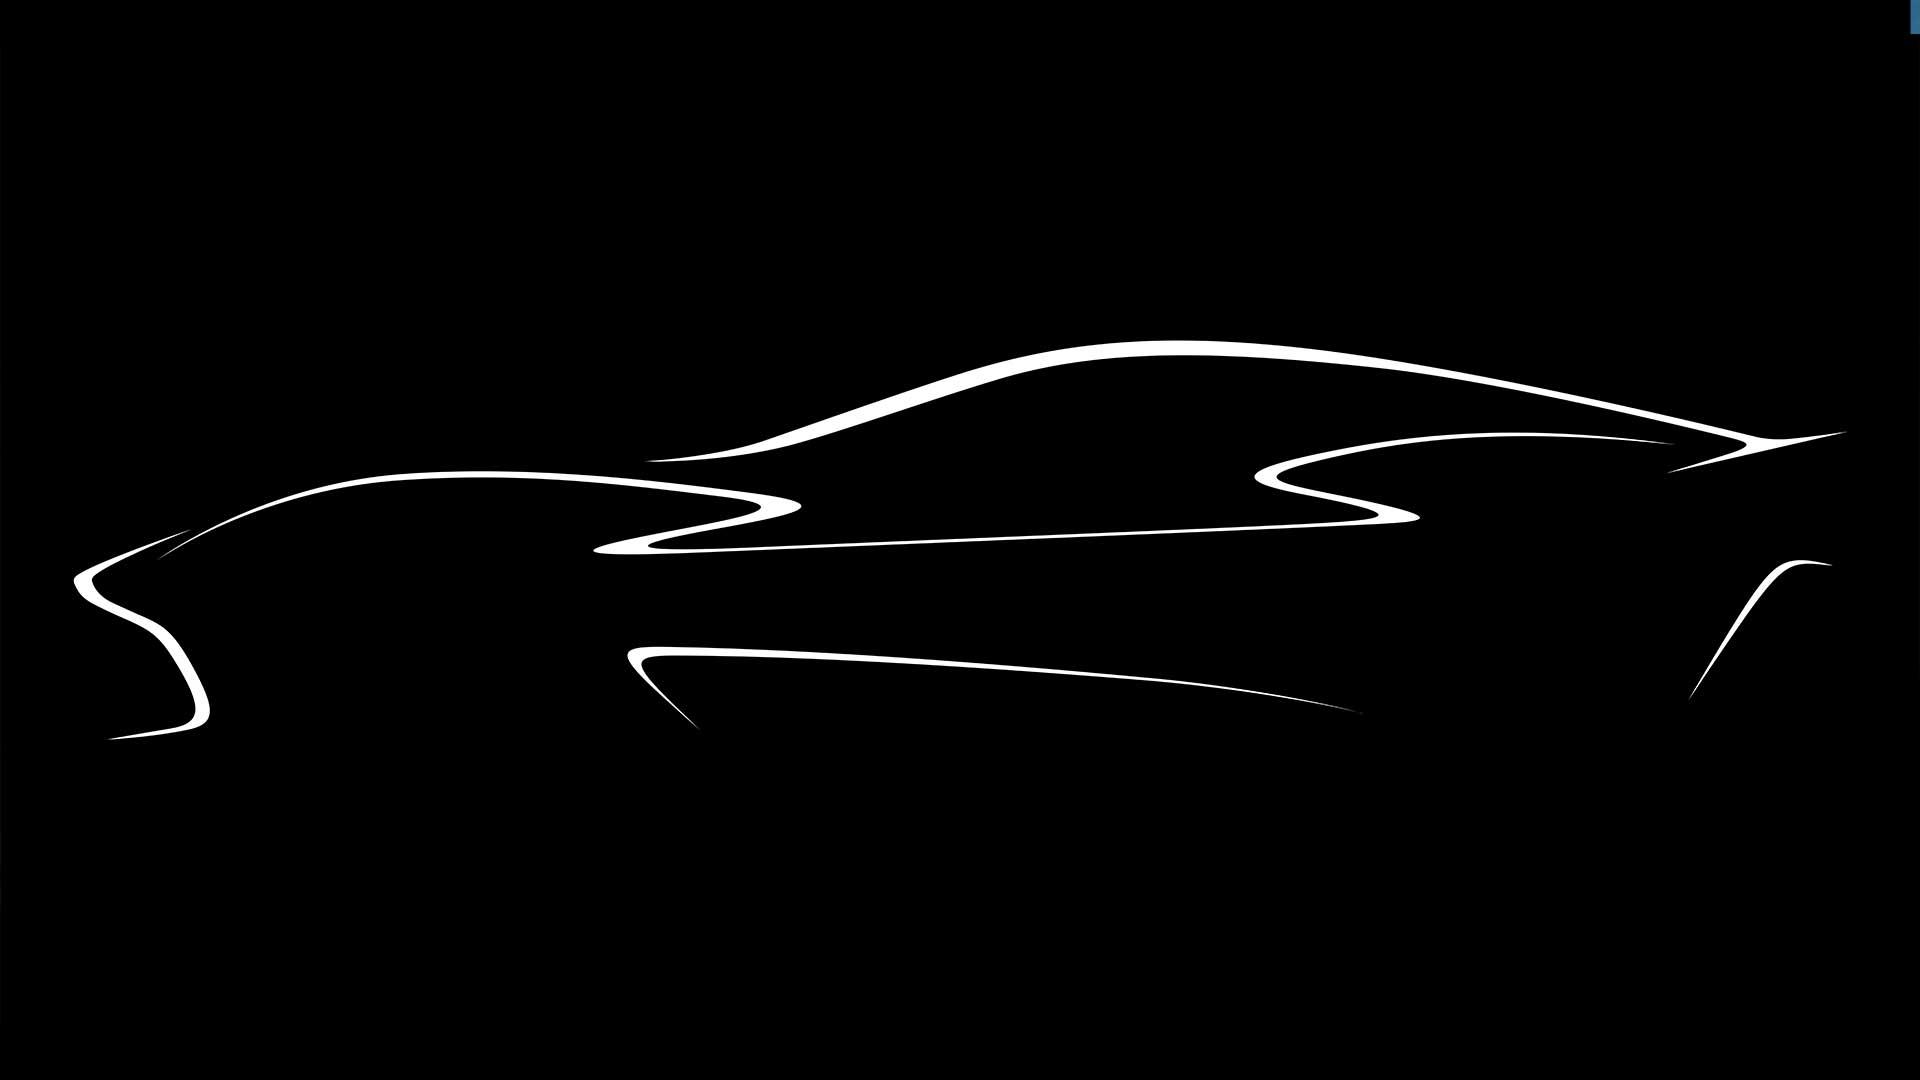 Aston Martin schets van elektrische auto zijkant samenwerking Lucid Motors